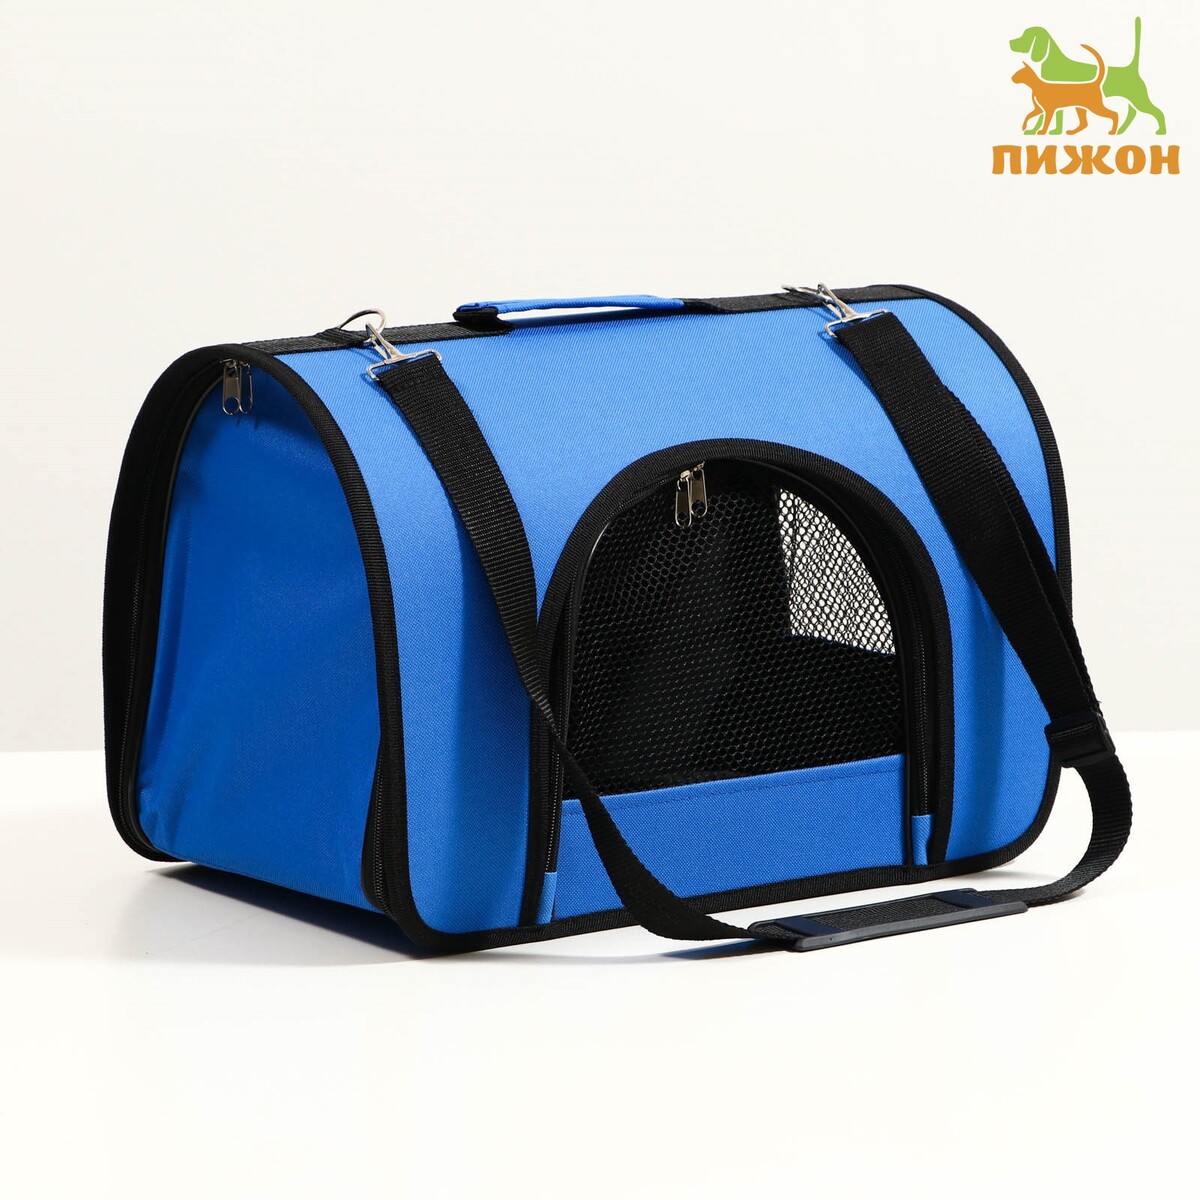 Сумка - переноска для животных, 2 входа, 40 х 25 х 28 см, синяя сумка переноска для животных оксфорд 42 х 22 х 29 см синяя